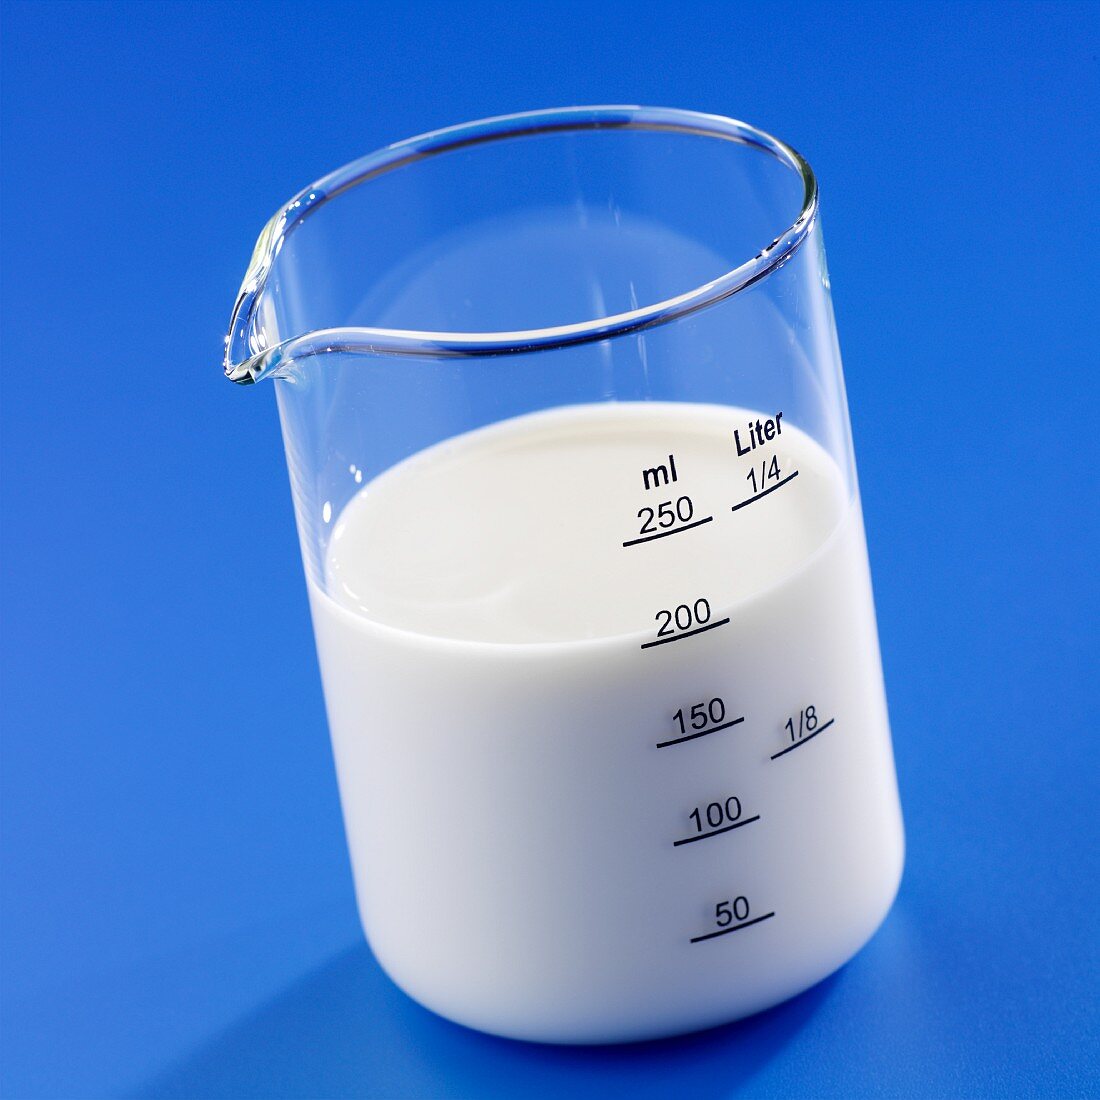 Milk in a measuring jug